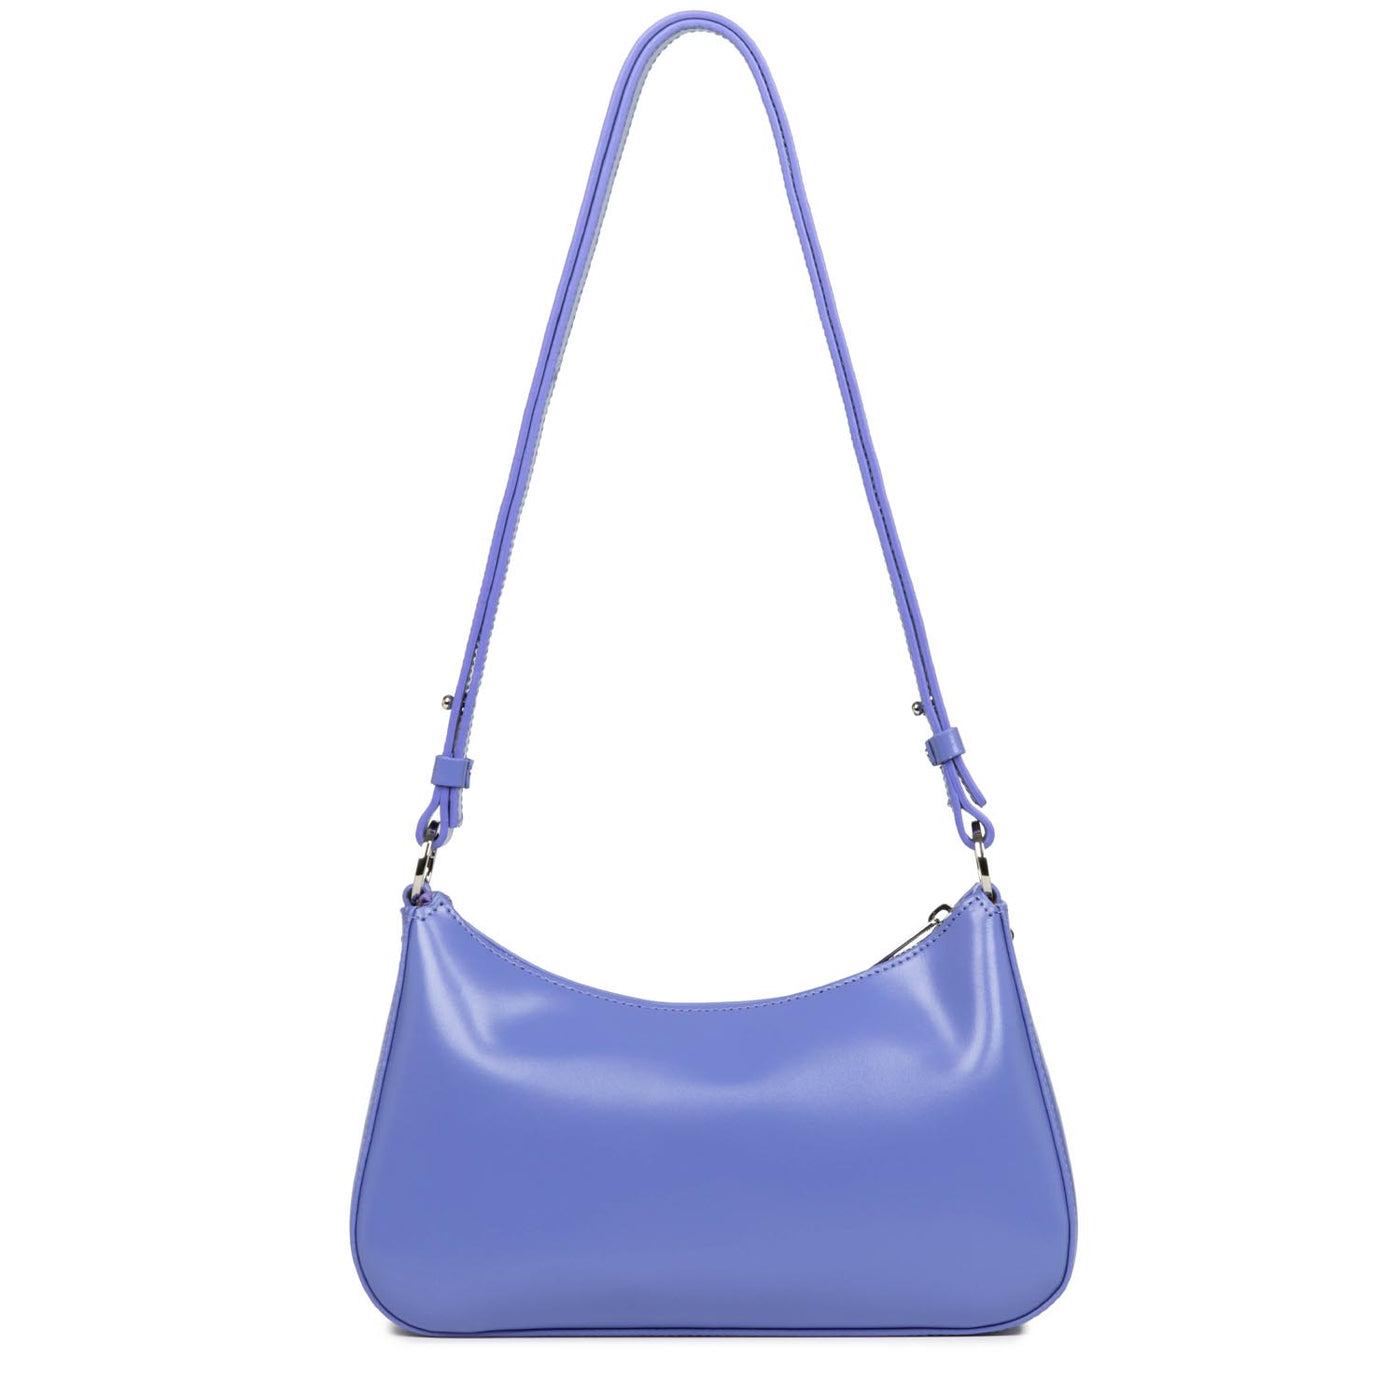 crossbody bag - suave ace #couleur_bleuette